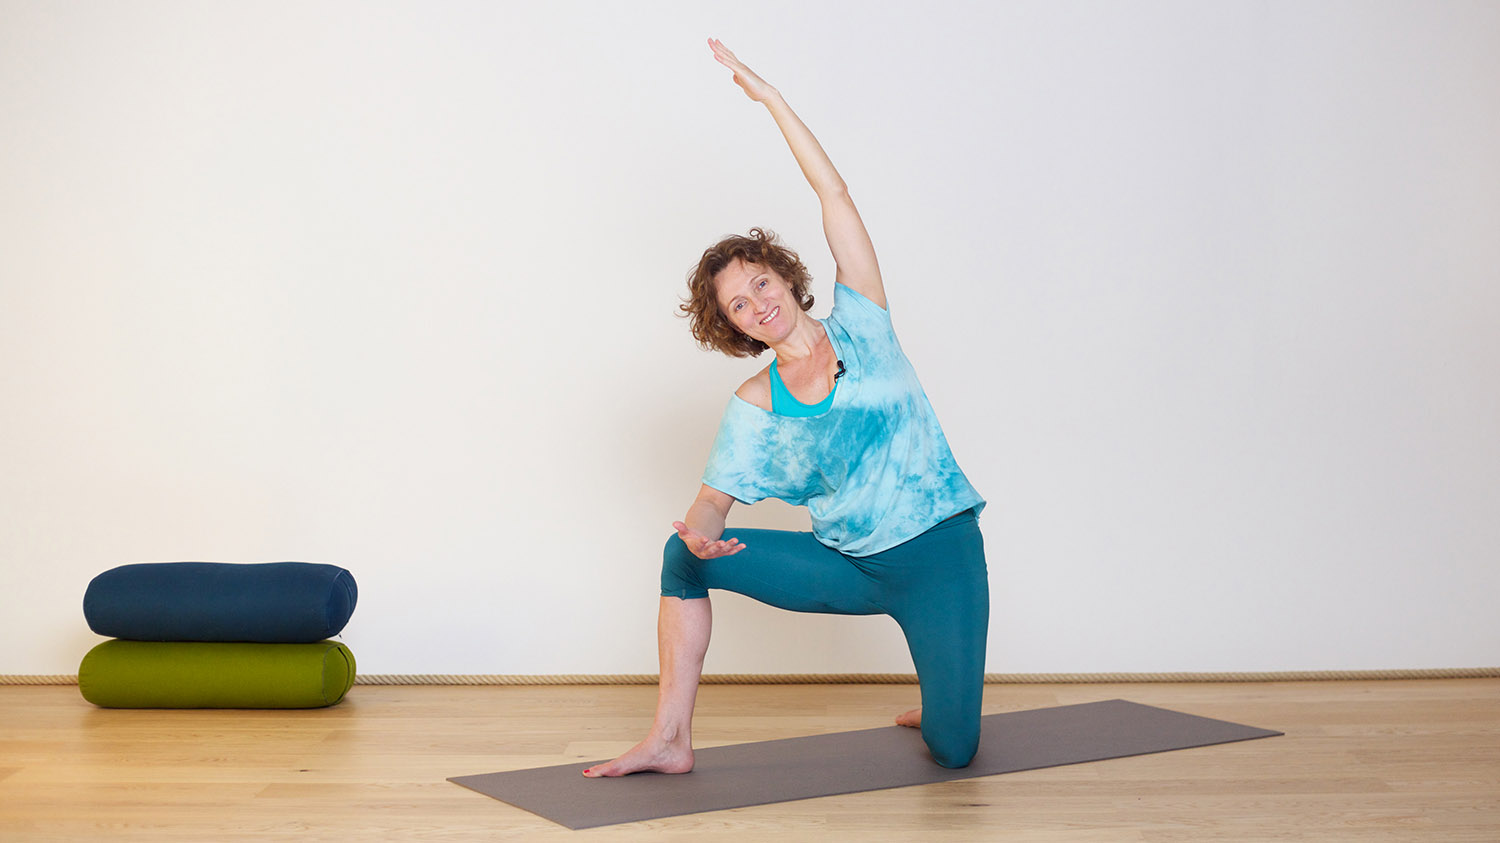 Plus d'espace pour respirer | Cours de yoga en ligne avec Delphine Denis | Hatha Yoga doux